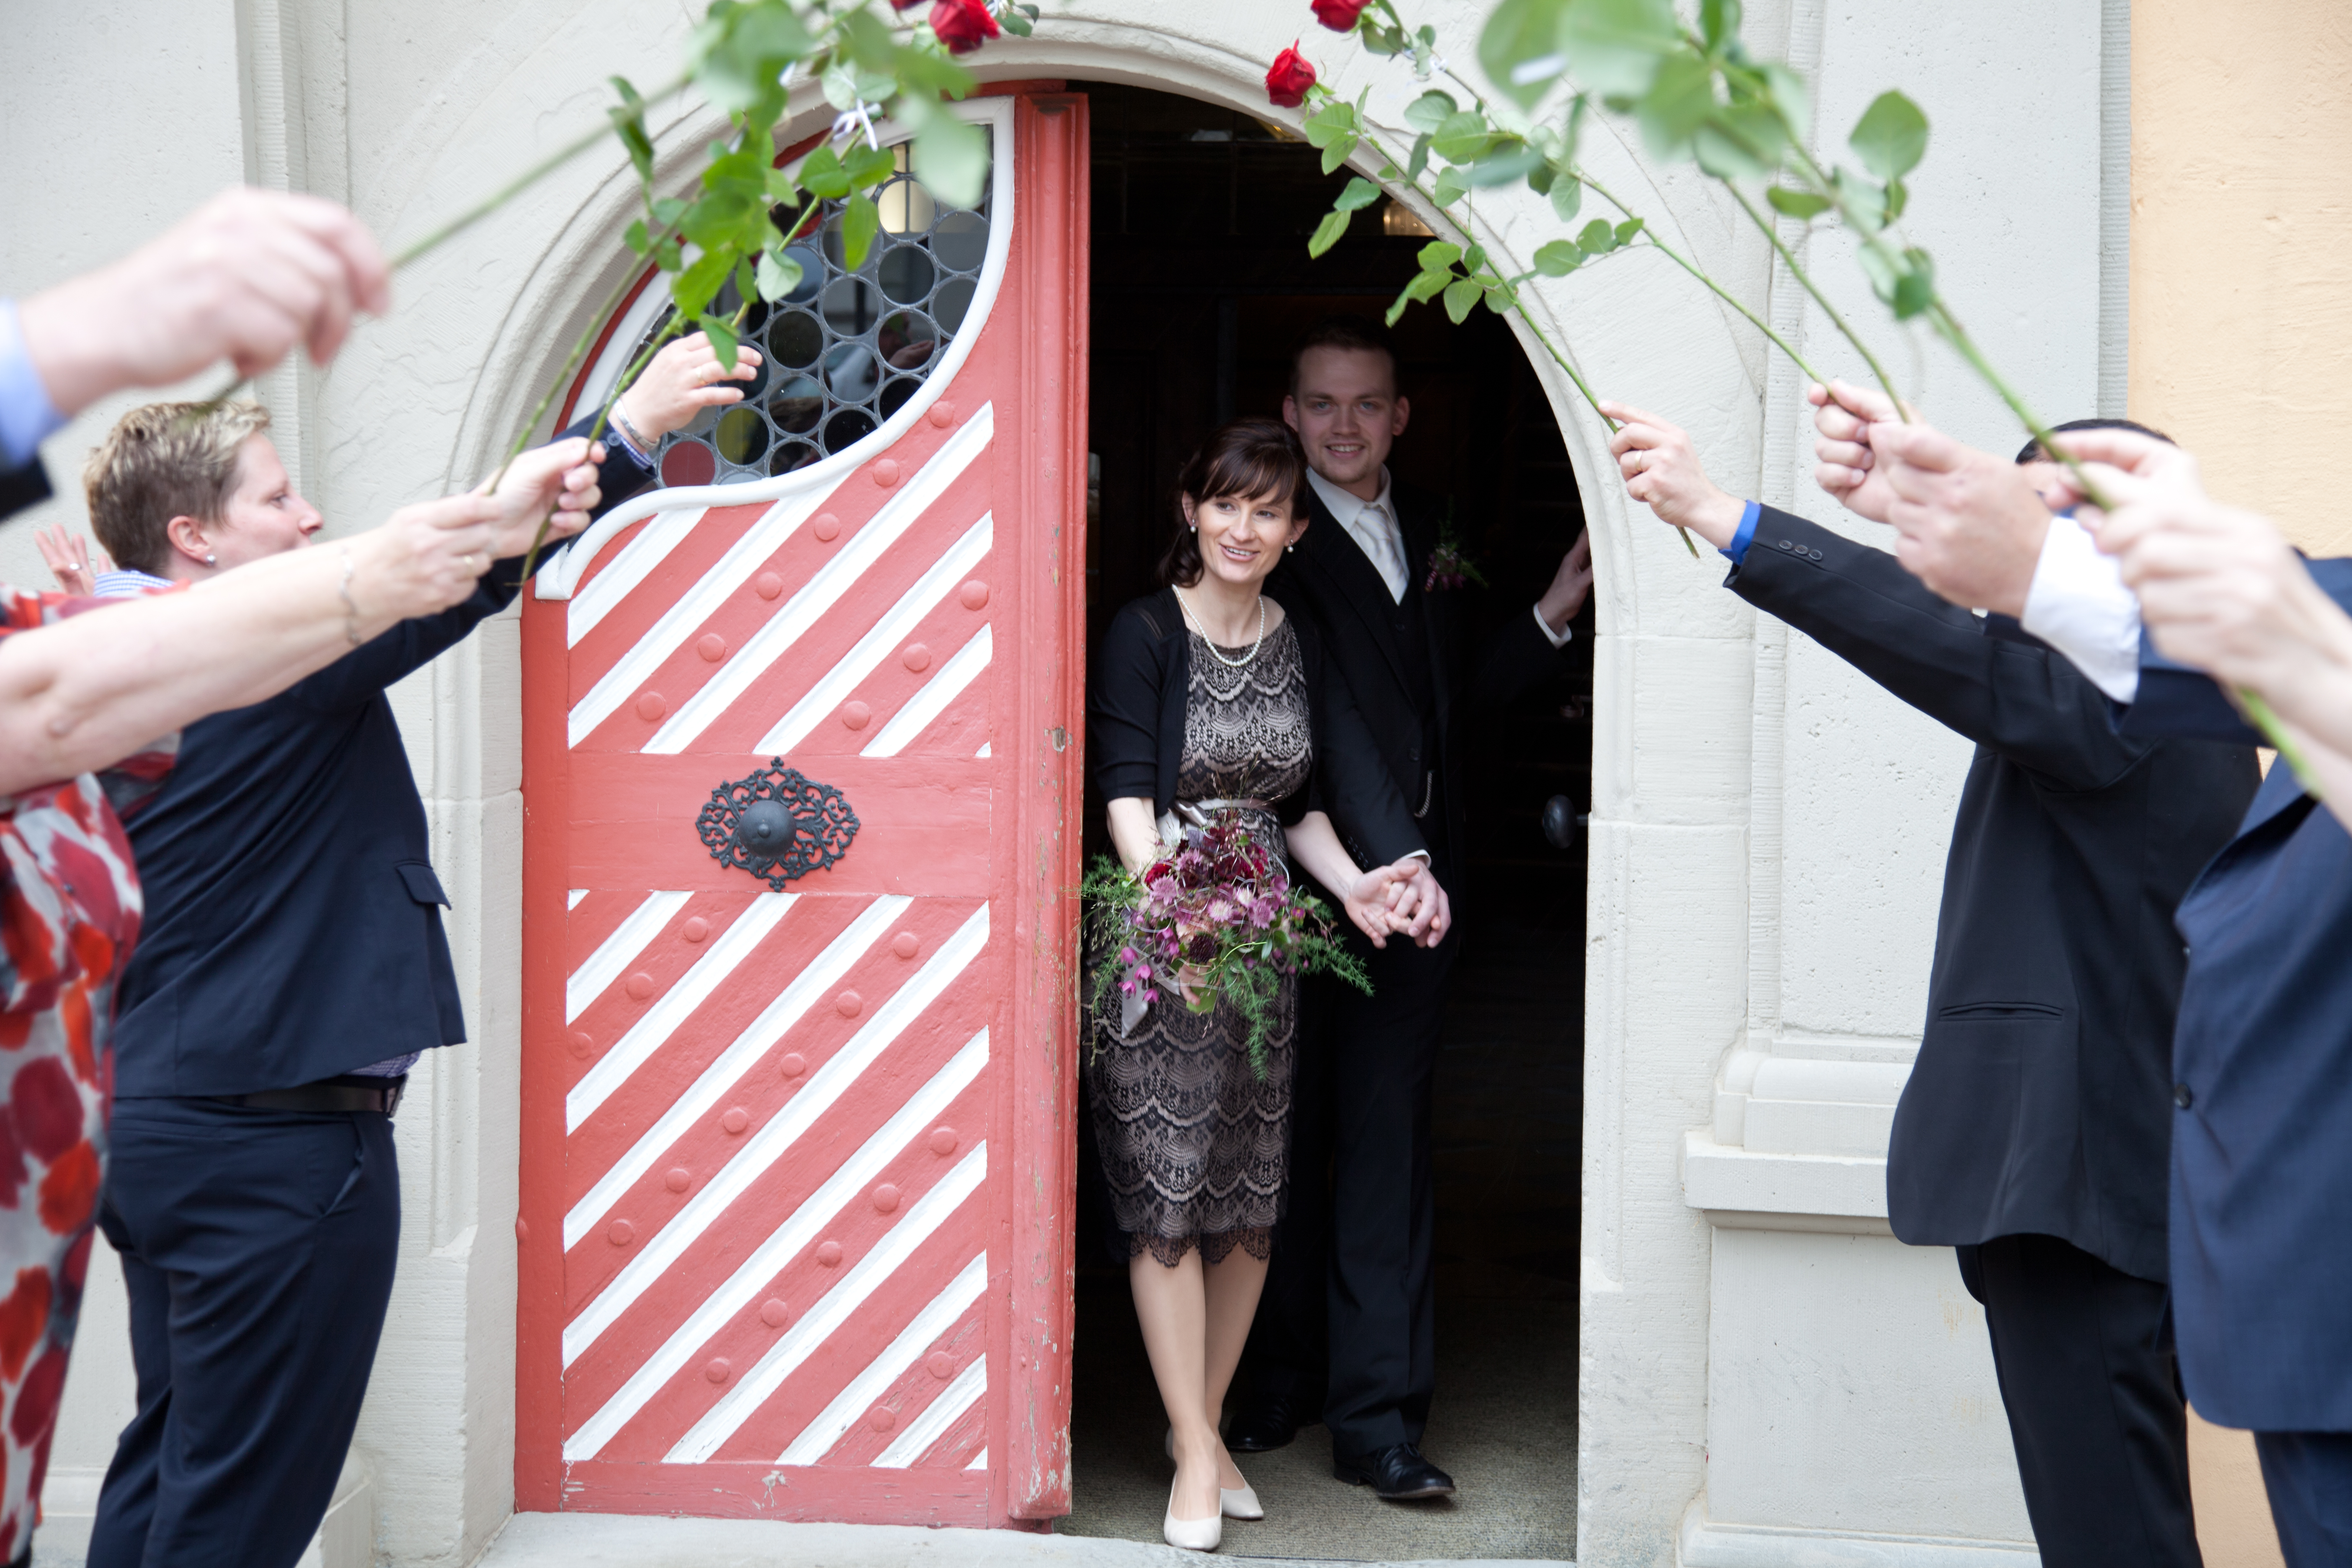  Das frisch getraute Brautpaar kommt aus der Eingangstüre des Rathauses in Weiler heraus. Die Hochzeitsgesellschaft steht mit roten Rosen Spalier - das Bild wird mit Klick vergrößert 